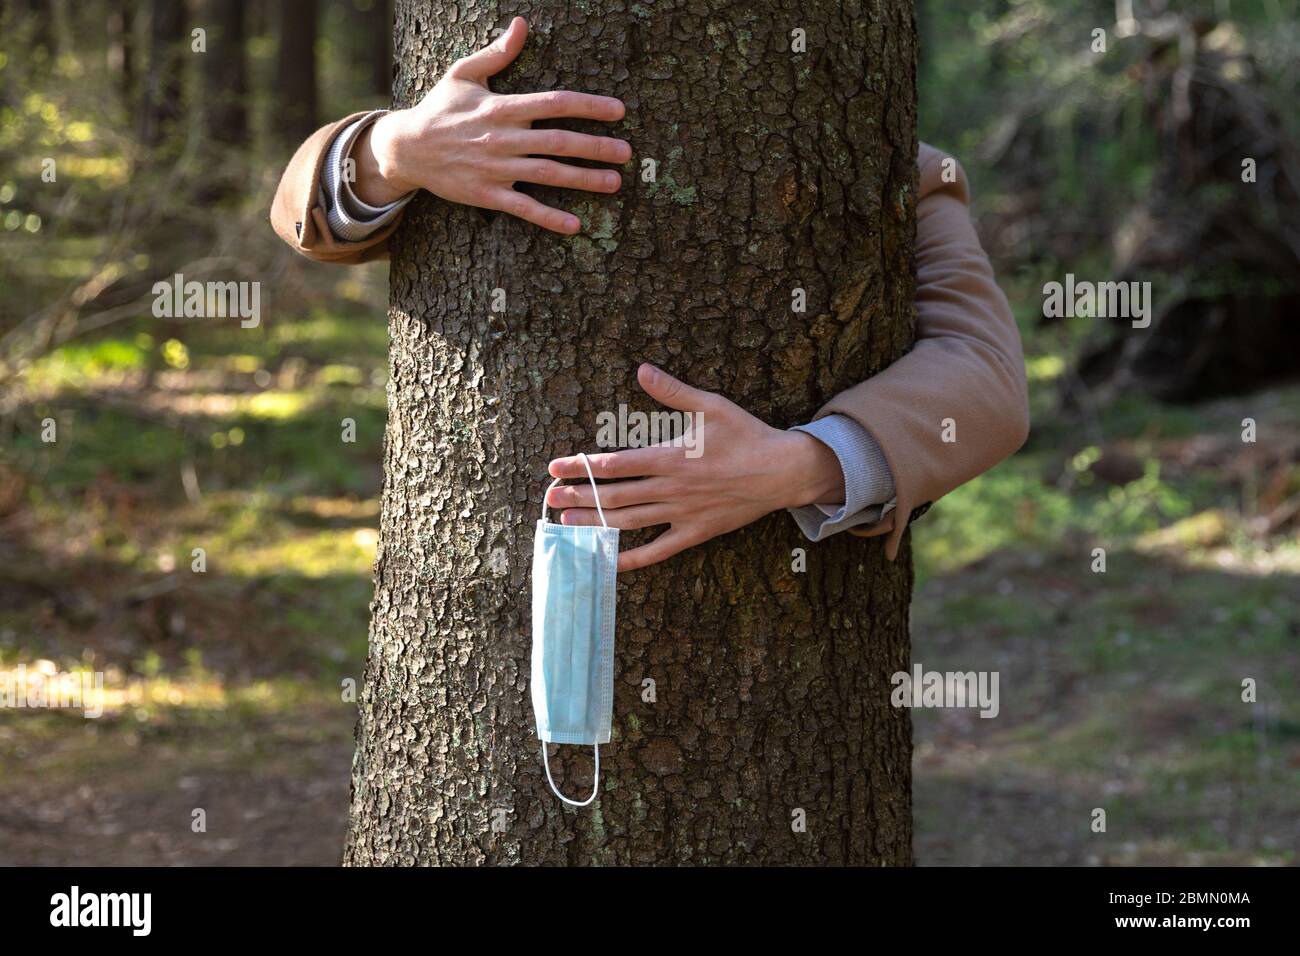 Primo piano delle mani che abbracciano un albero e toglie la maschera medica protettiva, lo tiene sulle sue dita, gode di vita, aria pulita fresca nella foresta dopo Co Foto Stock